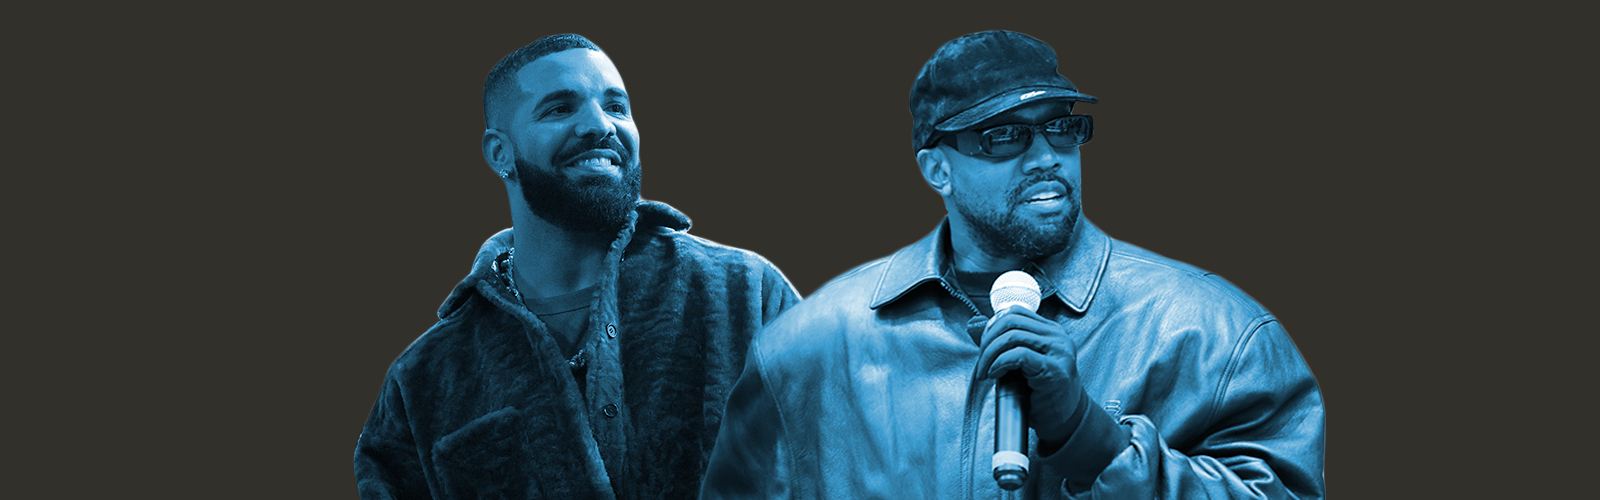 Kanye West and Drake Larry Hoover Concert